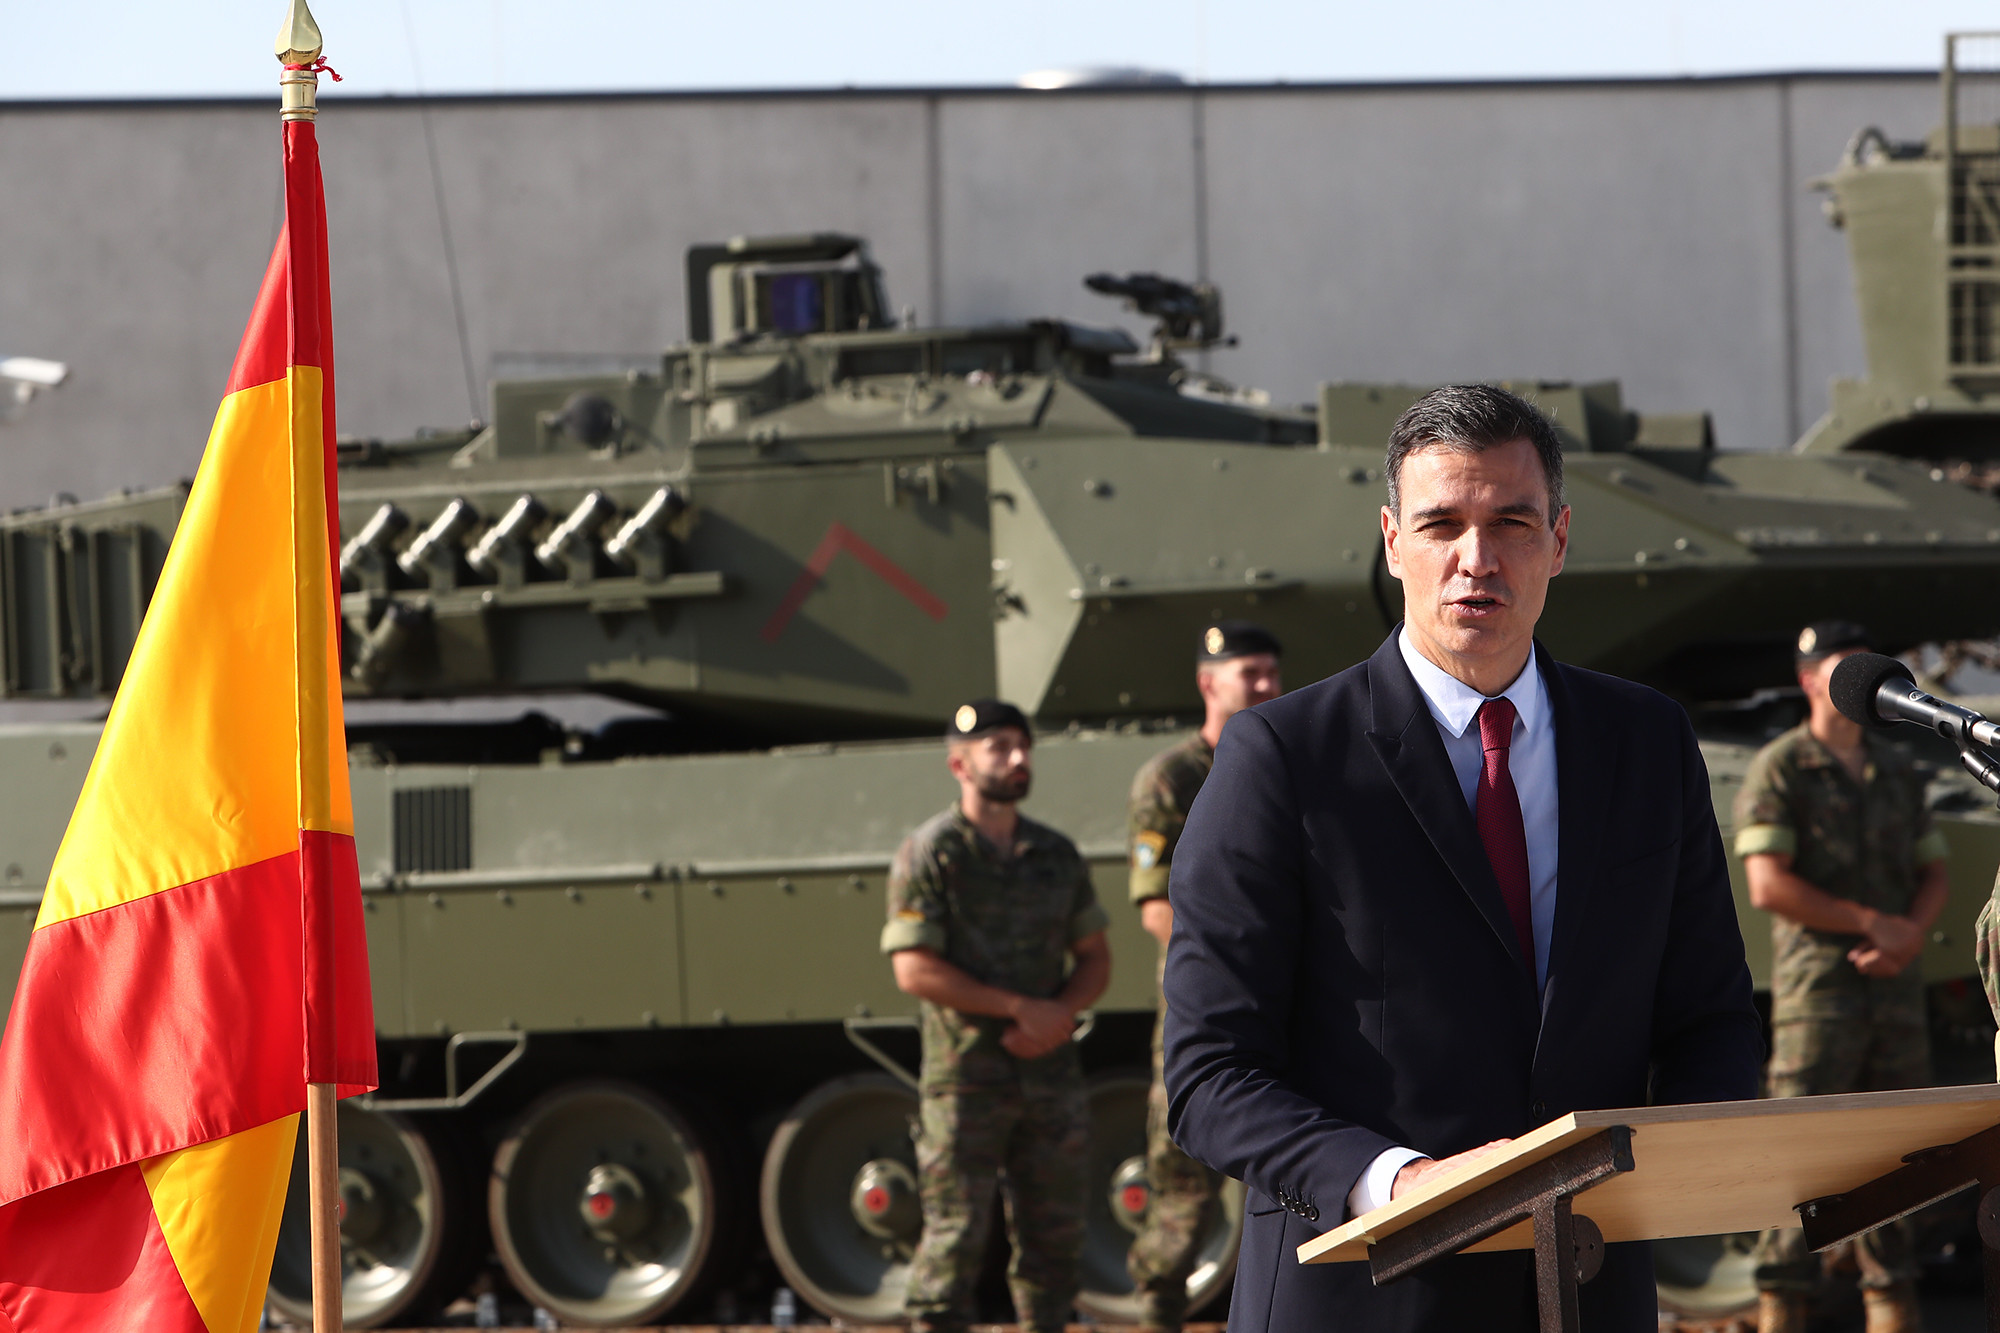 COMUNICADO del Centre Delàs sobre el aumento del gasto militar anunciado por el Gobierno español